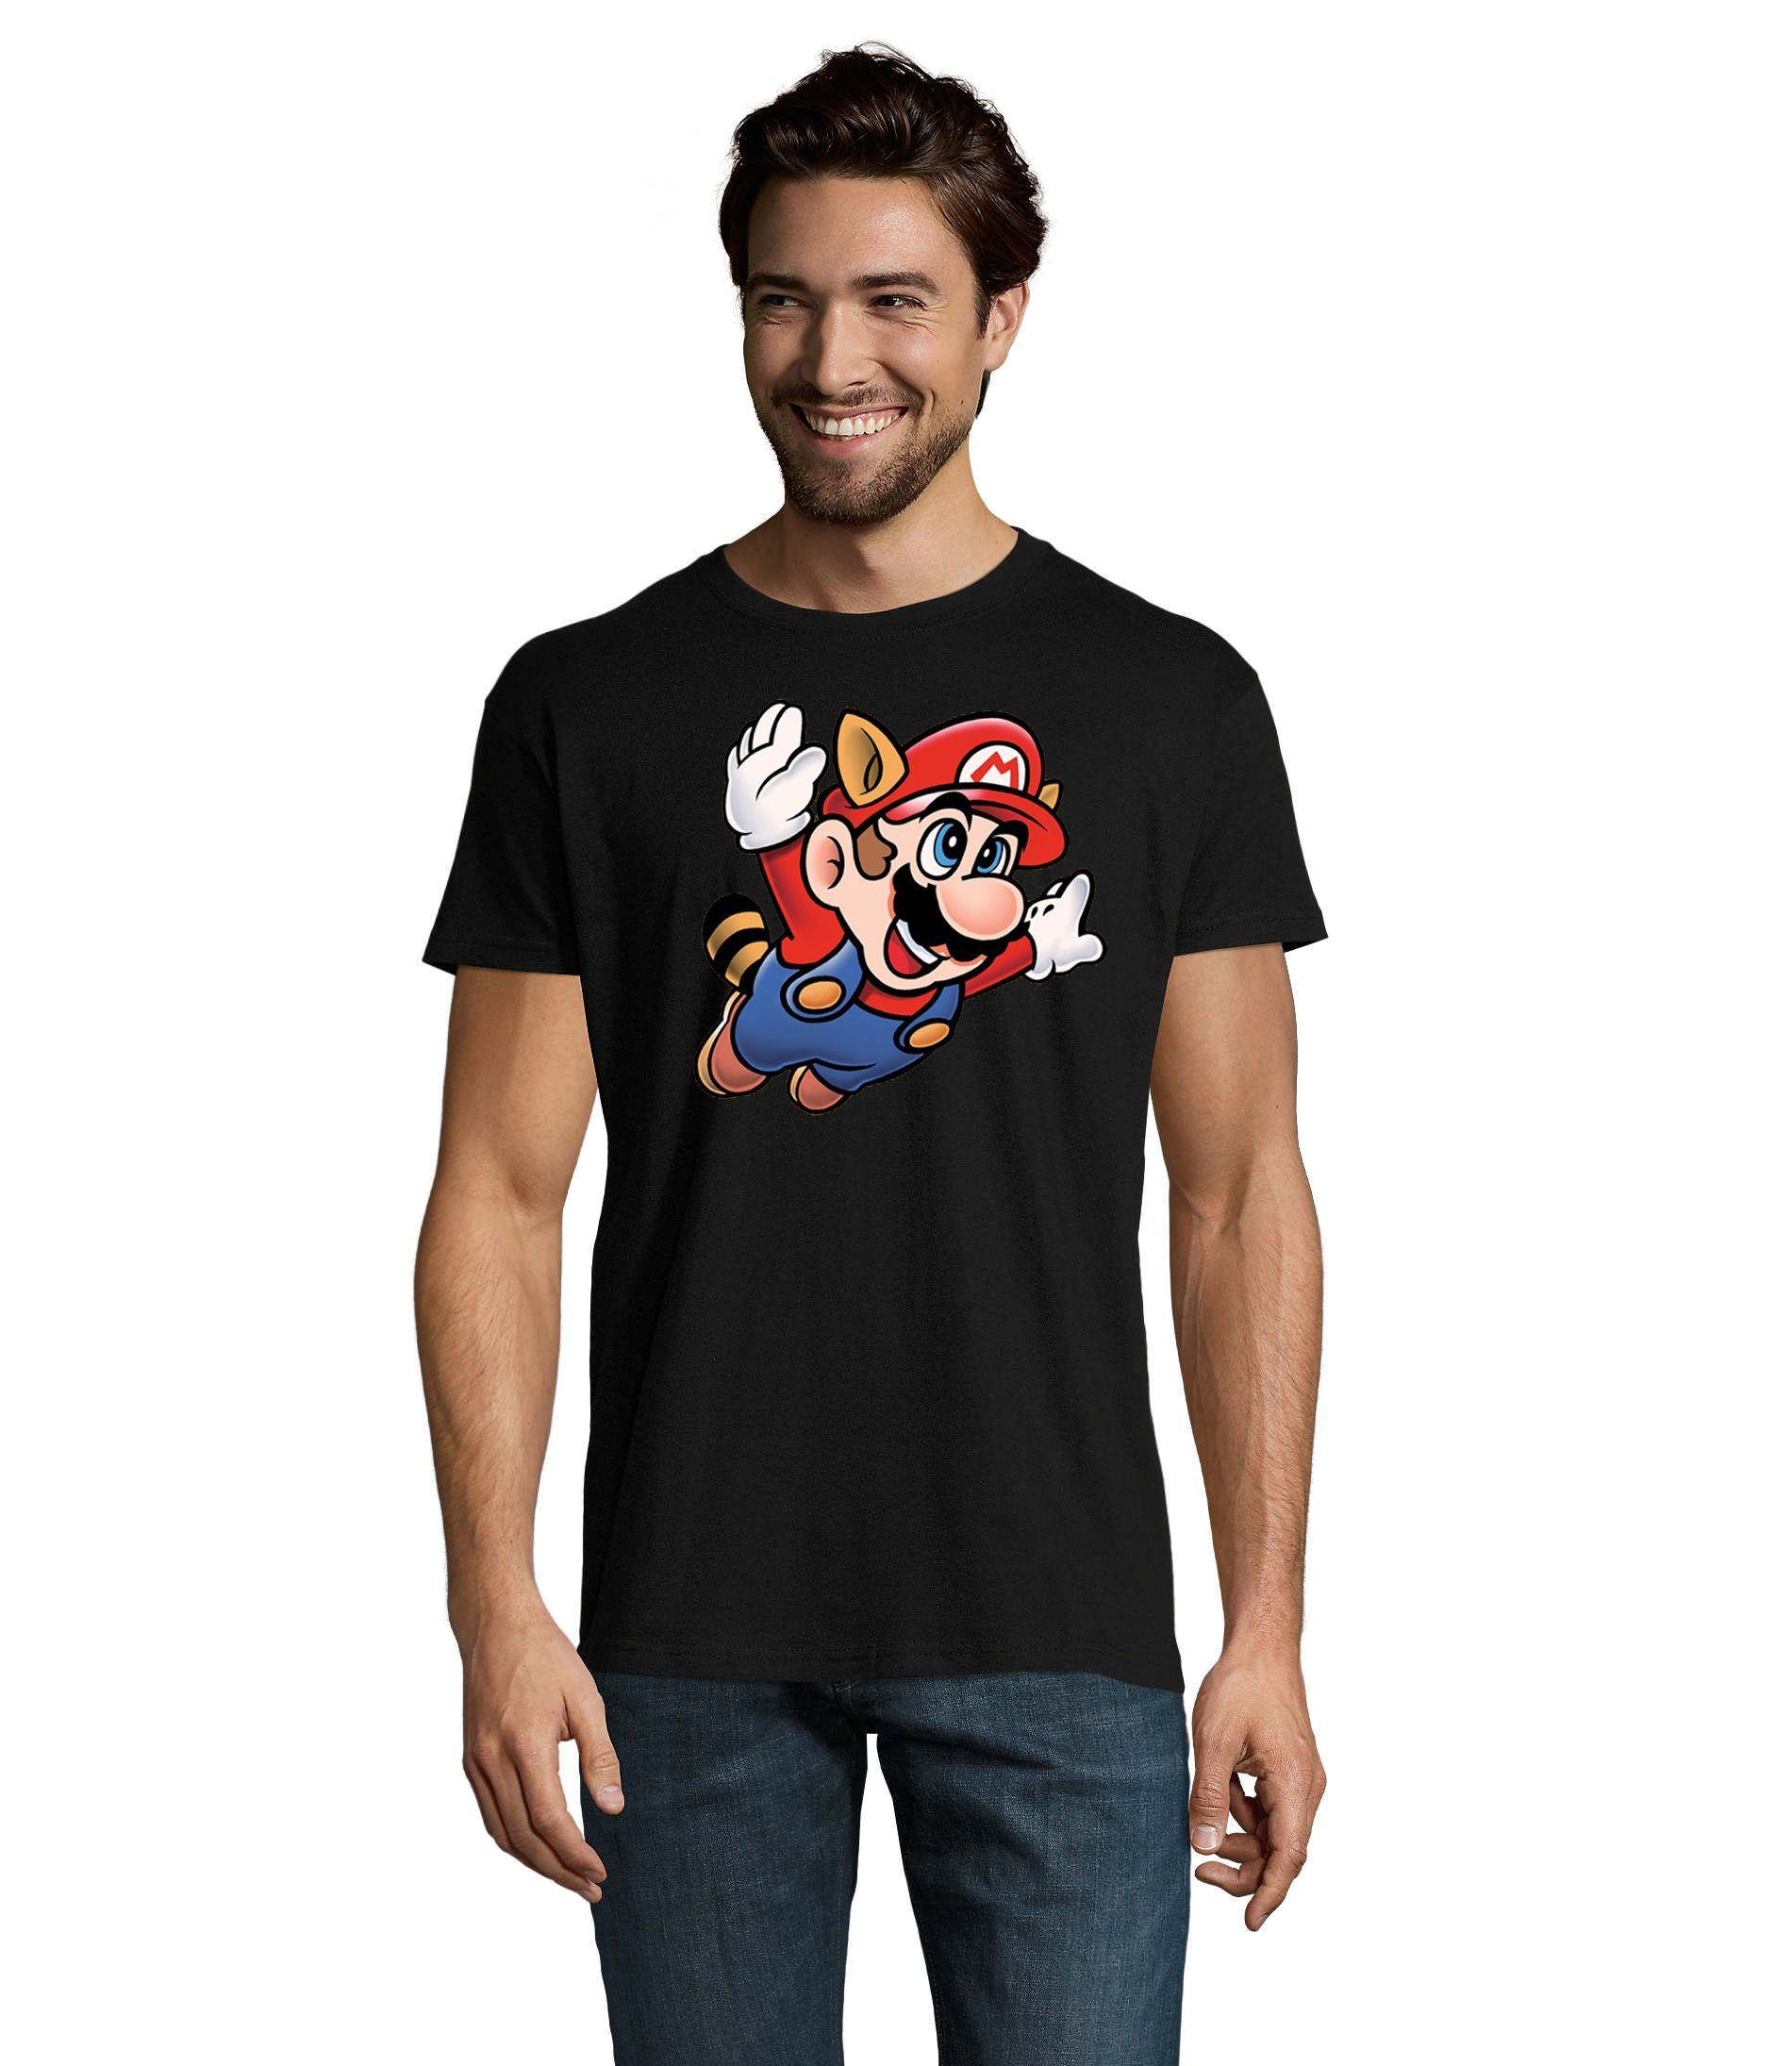 Blondie & 3 Brownie Schwarz Logo Print T-Shirt Herren Super Fligh Mario Nintendo